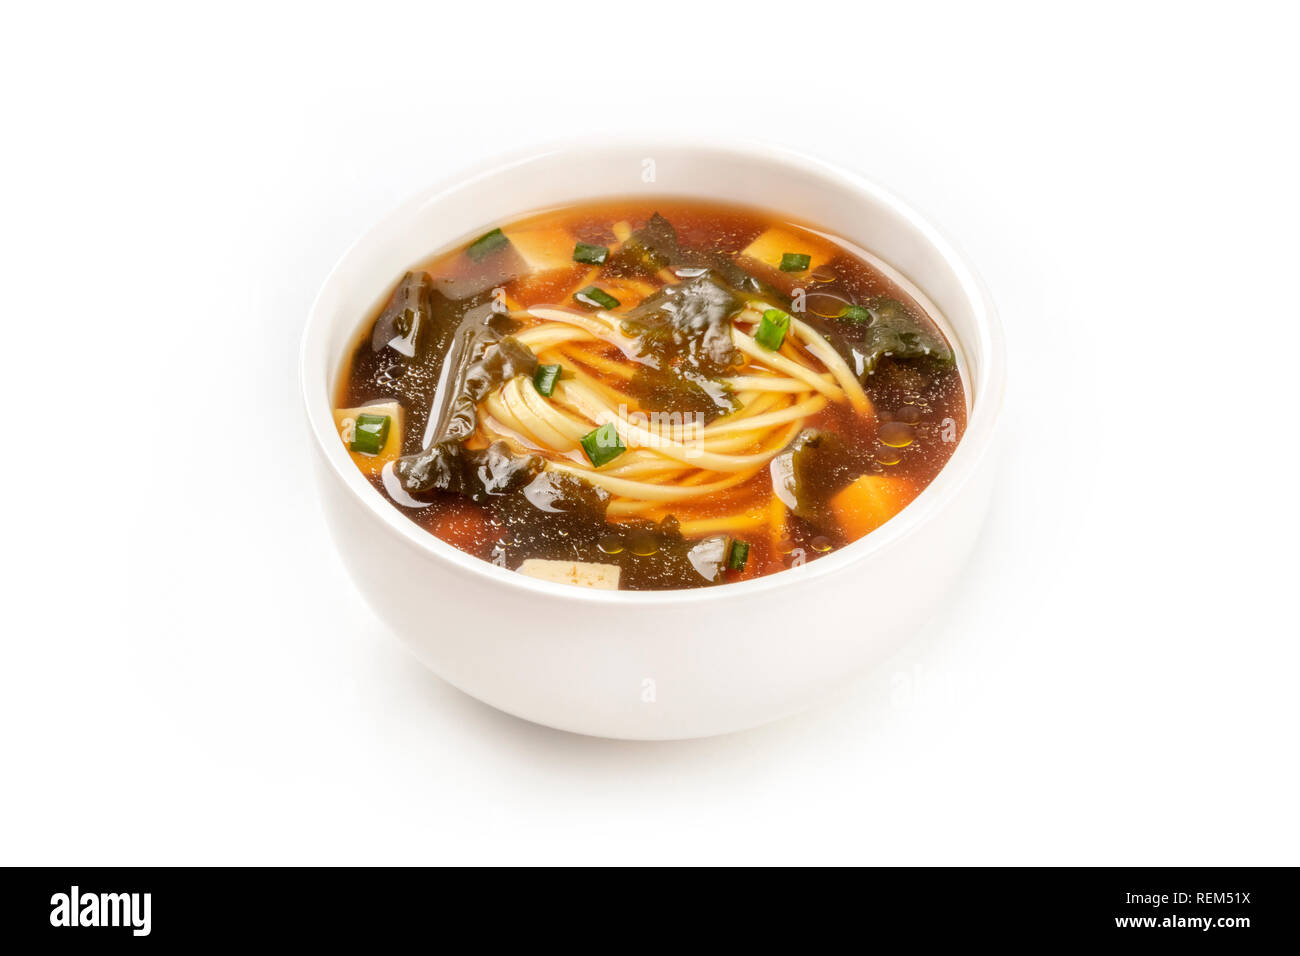 Une photo d'un bol de soupe miso avec le tofu, les oignons verts, les nouilles et les algues wakame, sur un fond blanc avec une place pour le texte Banque D'Images